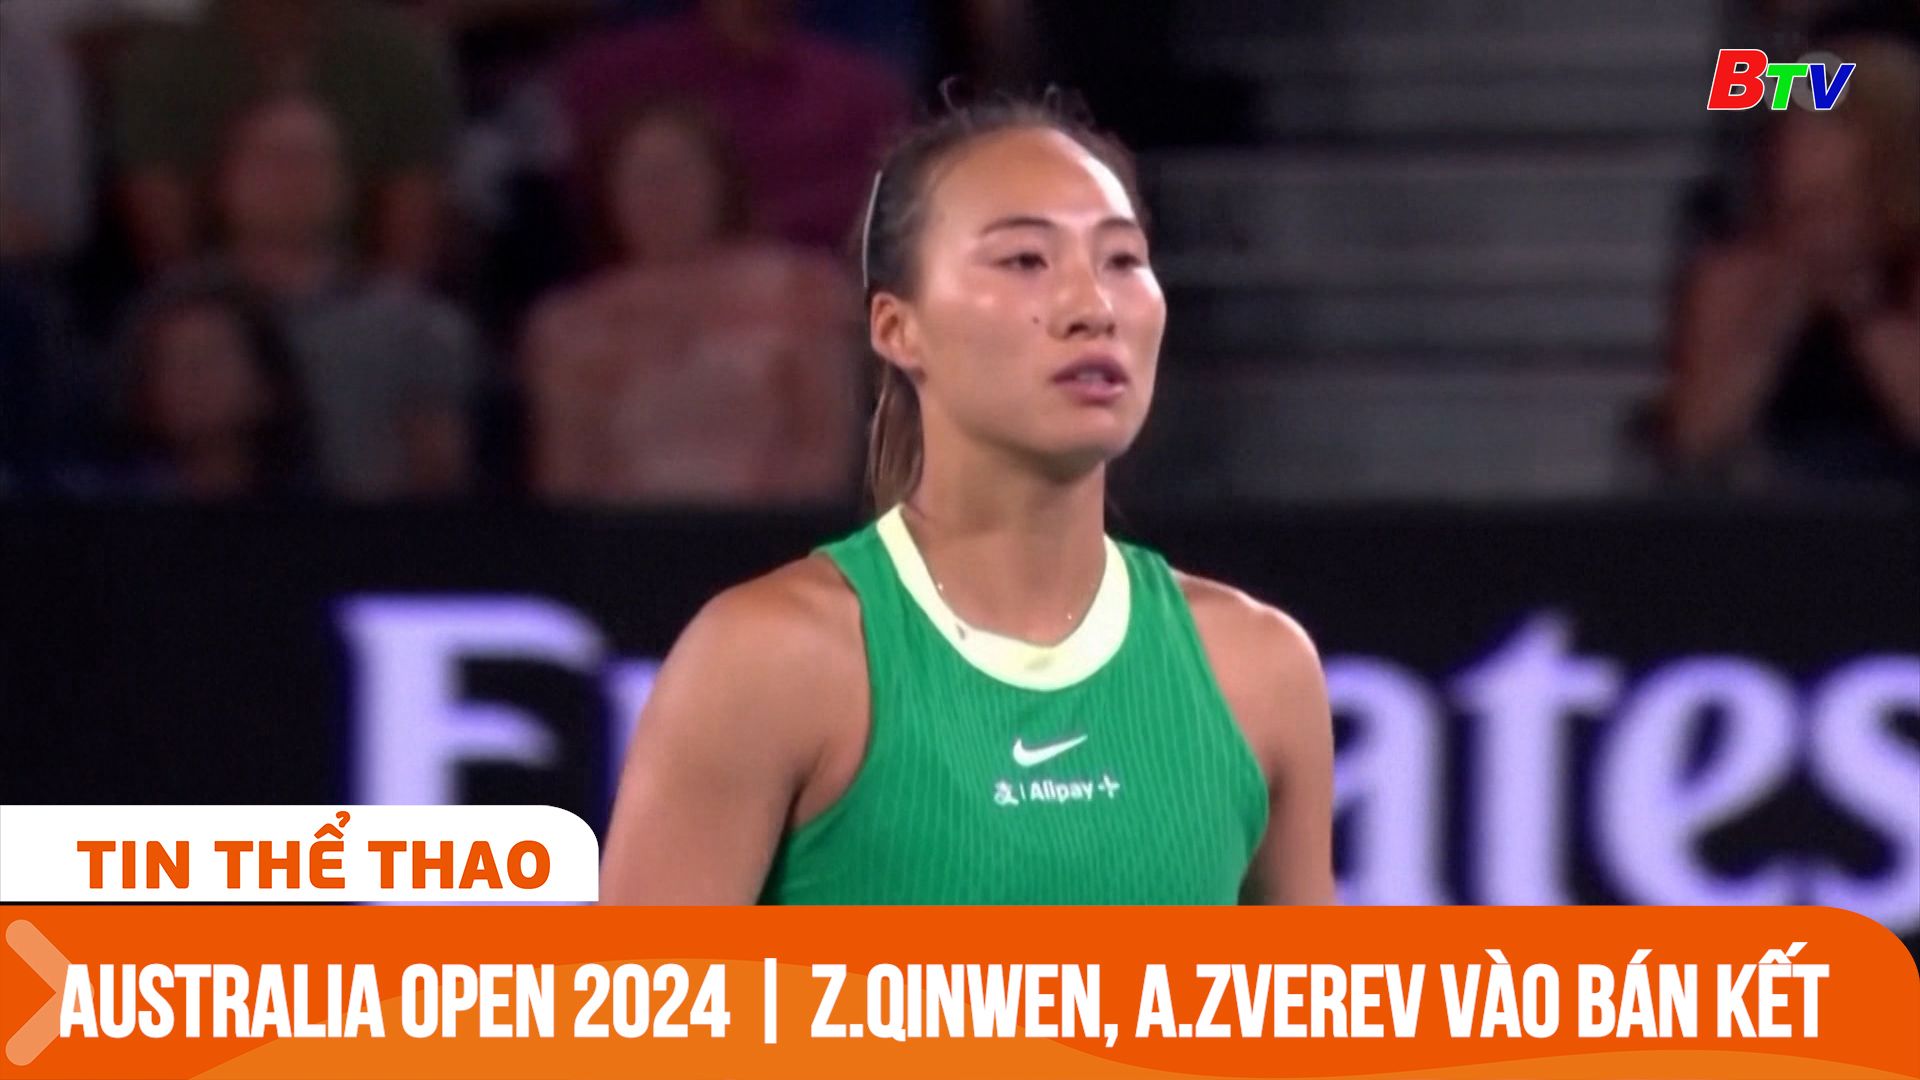 Australia Open 2024 | Zheng Qinwen, Zverev vào bán kết | Tin Thể thao 24h	